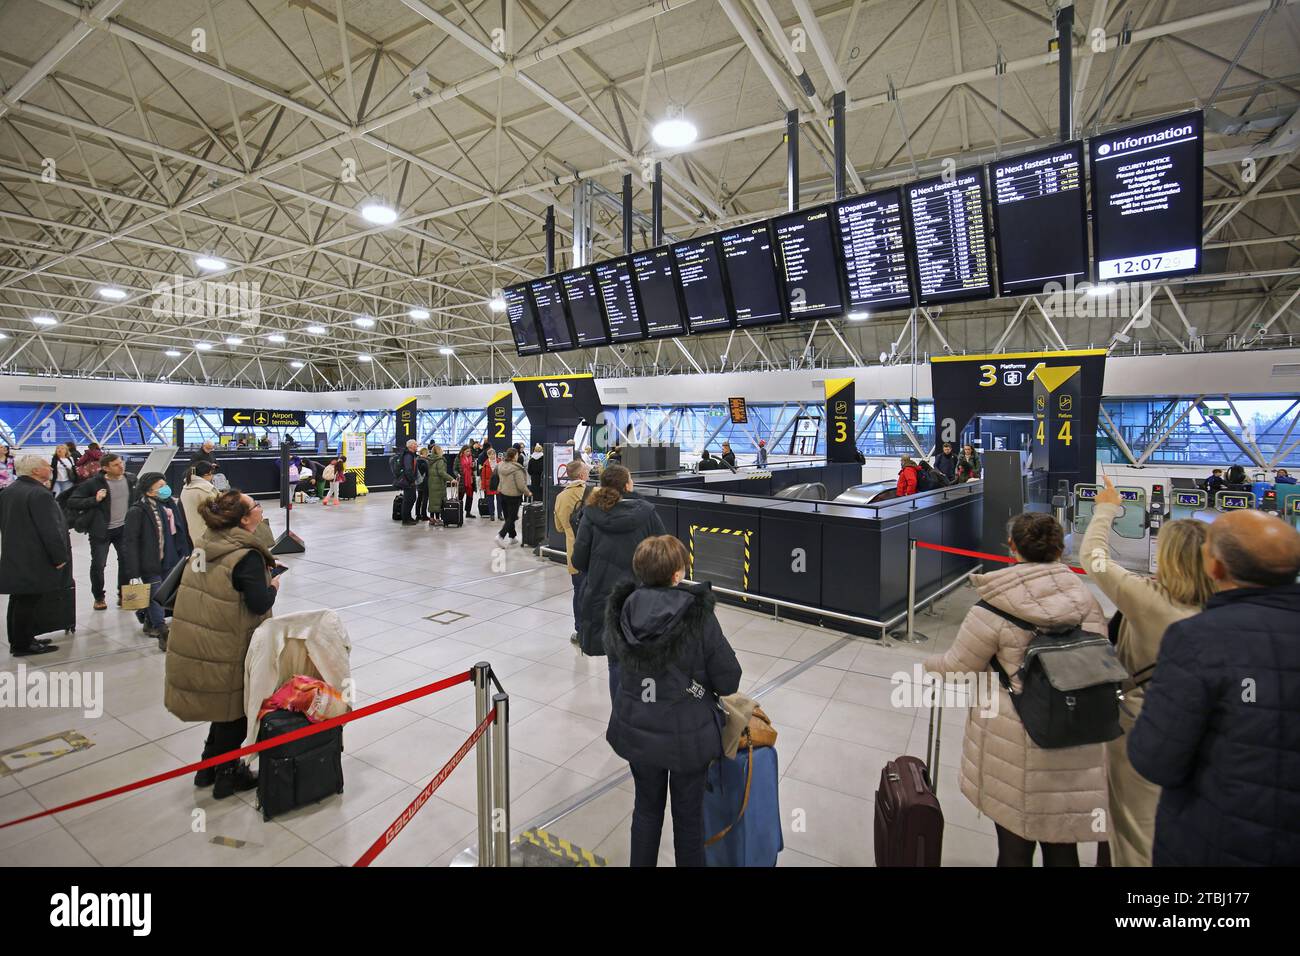 Die neu erweiterte Bahnhofshalle am Londoner Flughafen Gatwick, Großbritannien (Dezember 2023). Zeigt Infotafeln für die Zugabfahrt und den Auskunftsschalter. Stockfoto